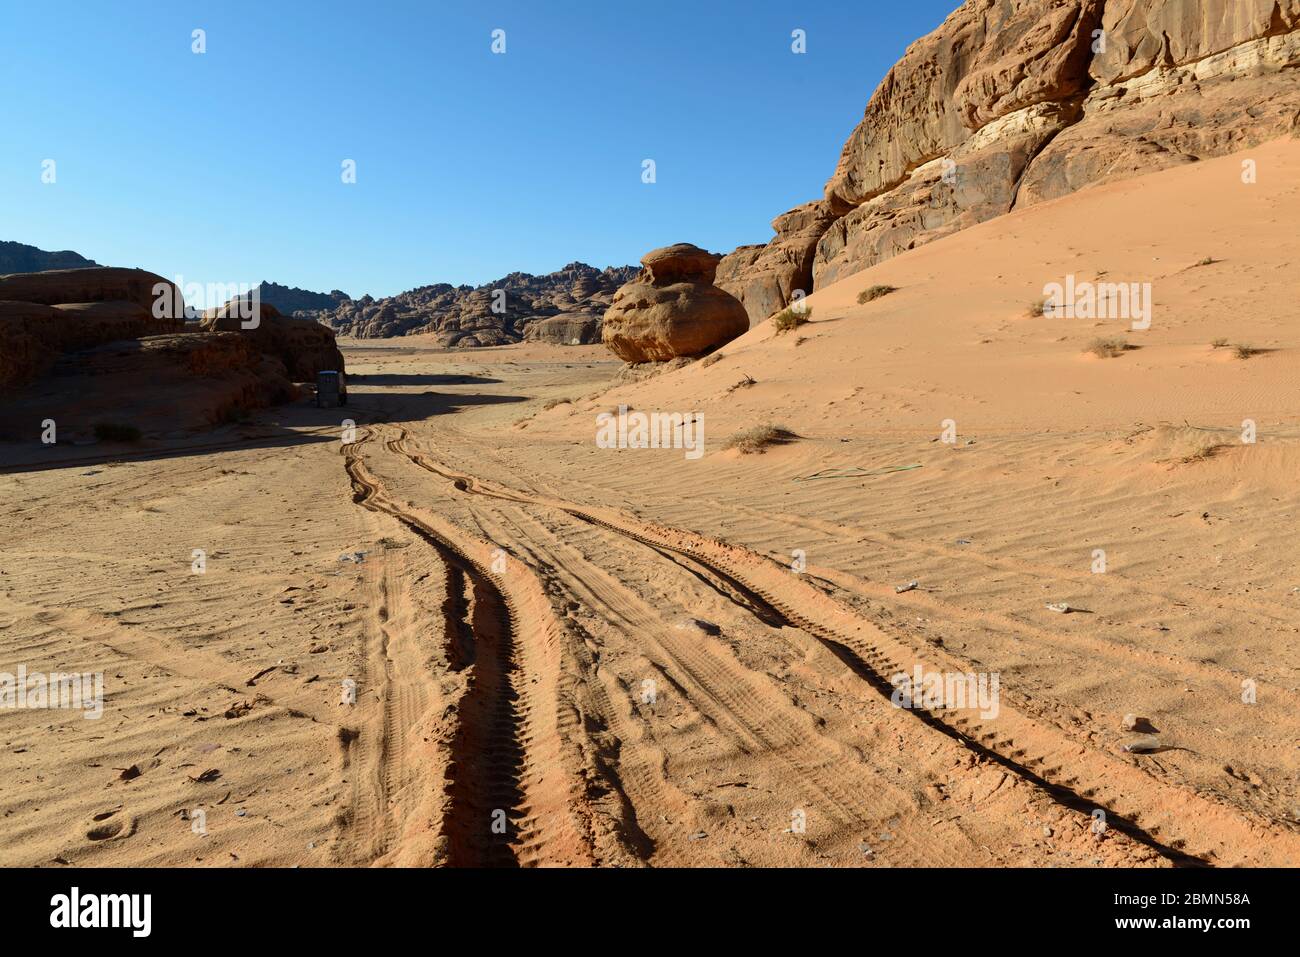 Car tracks in the desert of Saudi Arabia Stock Photo